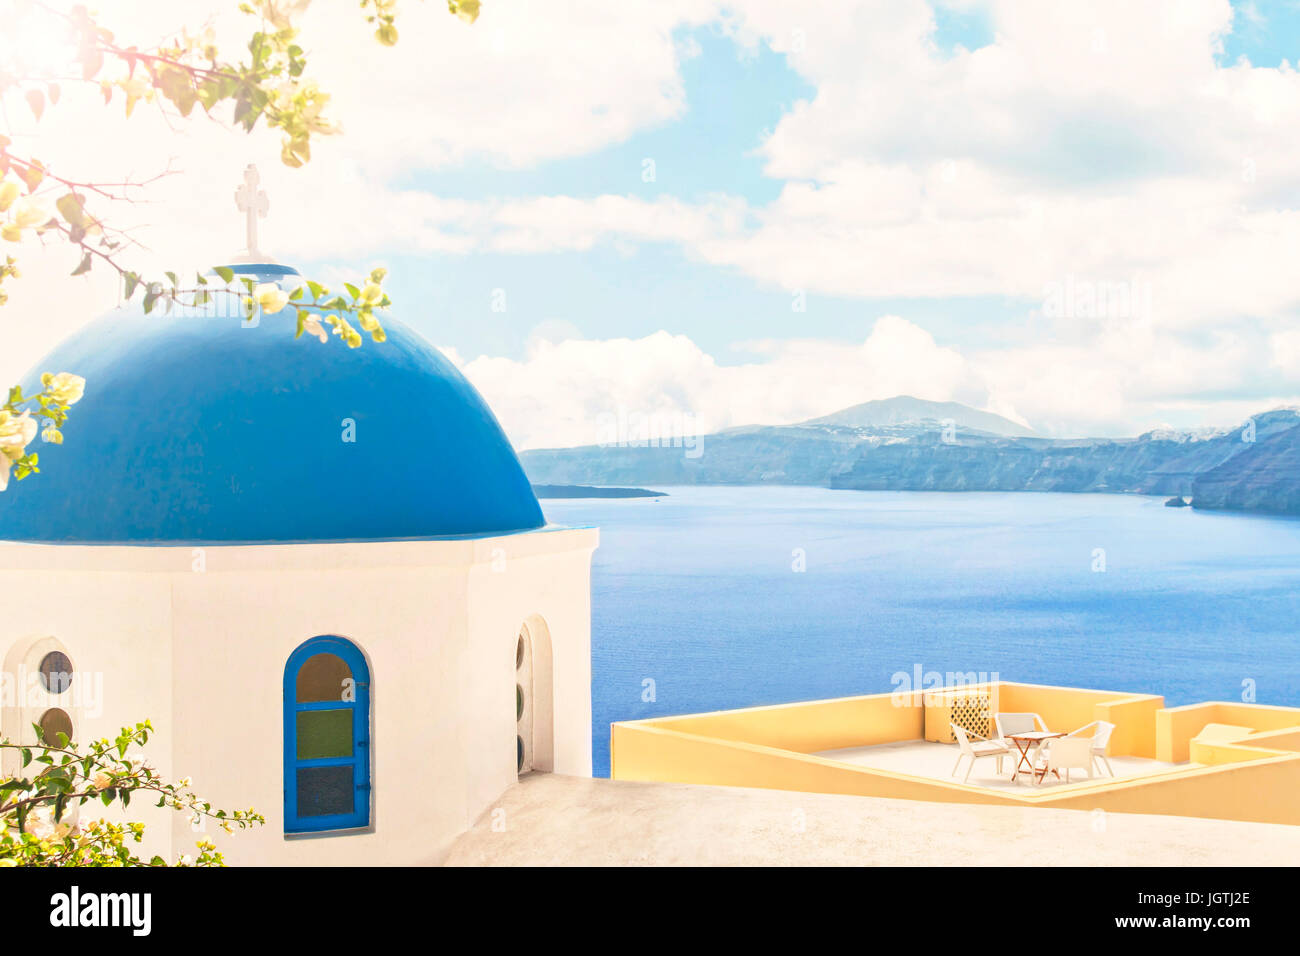 Blick auf orthodoxe Kirche blaue Kuppel und Tag der offenen Tür Terrasse mit Blumen im Vordergrund und Berge mit Meer im Hintergrund an sonnigen Sommertag mit Sonne Stockfoto